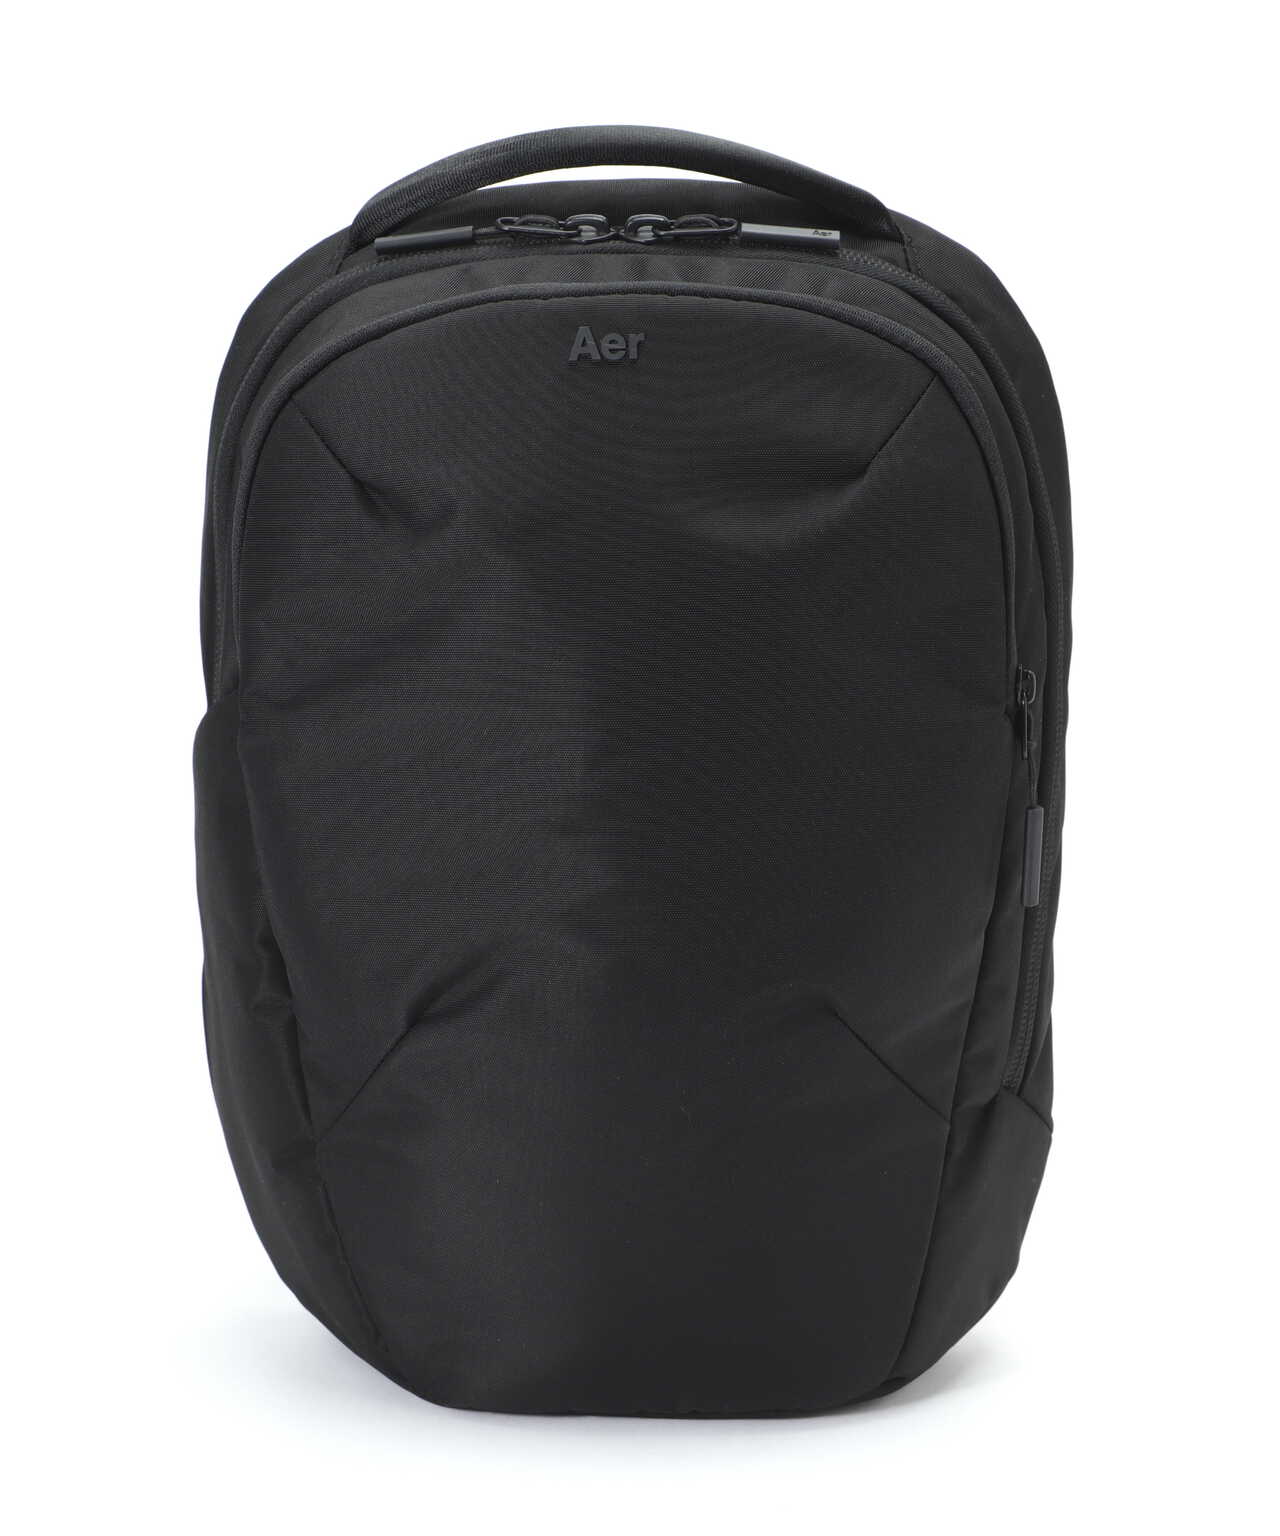 Aer（エアー）Pro Pack Slim Black AER-61004 | B'2nd ( ビーセカンド ...